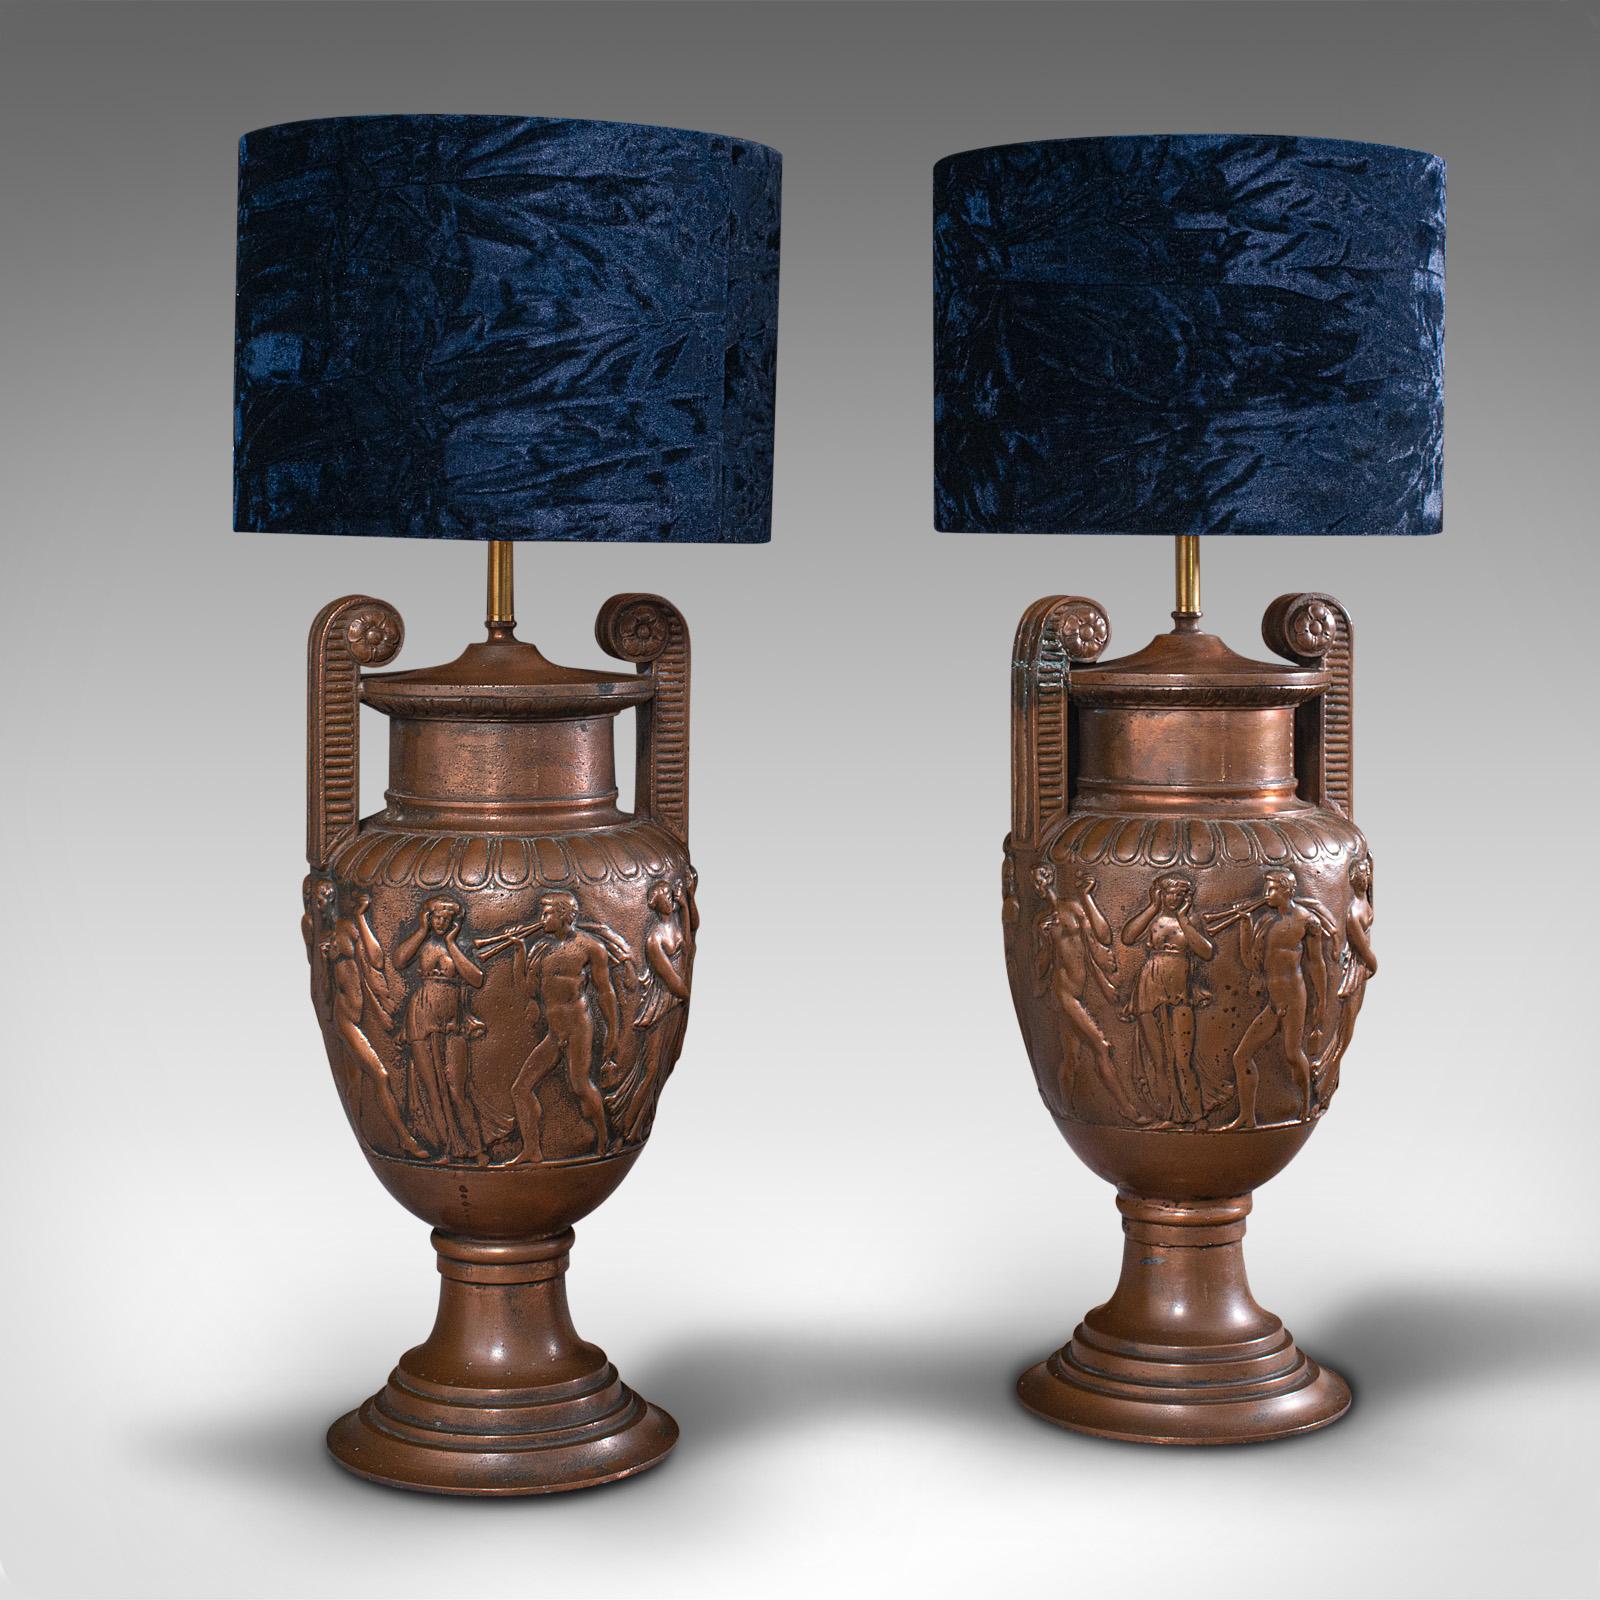 Il s'agit d'une paire de lampes décoratives anciennes. Une lampe de table anglaise en bronze avec une influence romaine antique du célèbre vase Townley, datant de la fin de la période victorienne, vers 1900.

Superbe hommage en bronze au vase